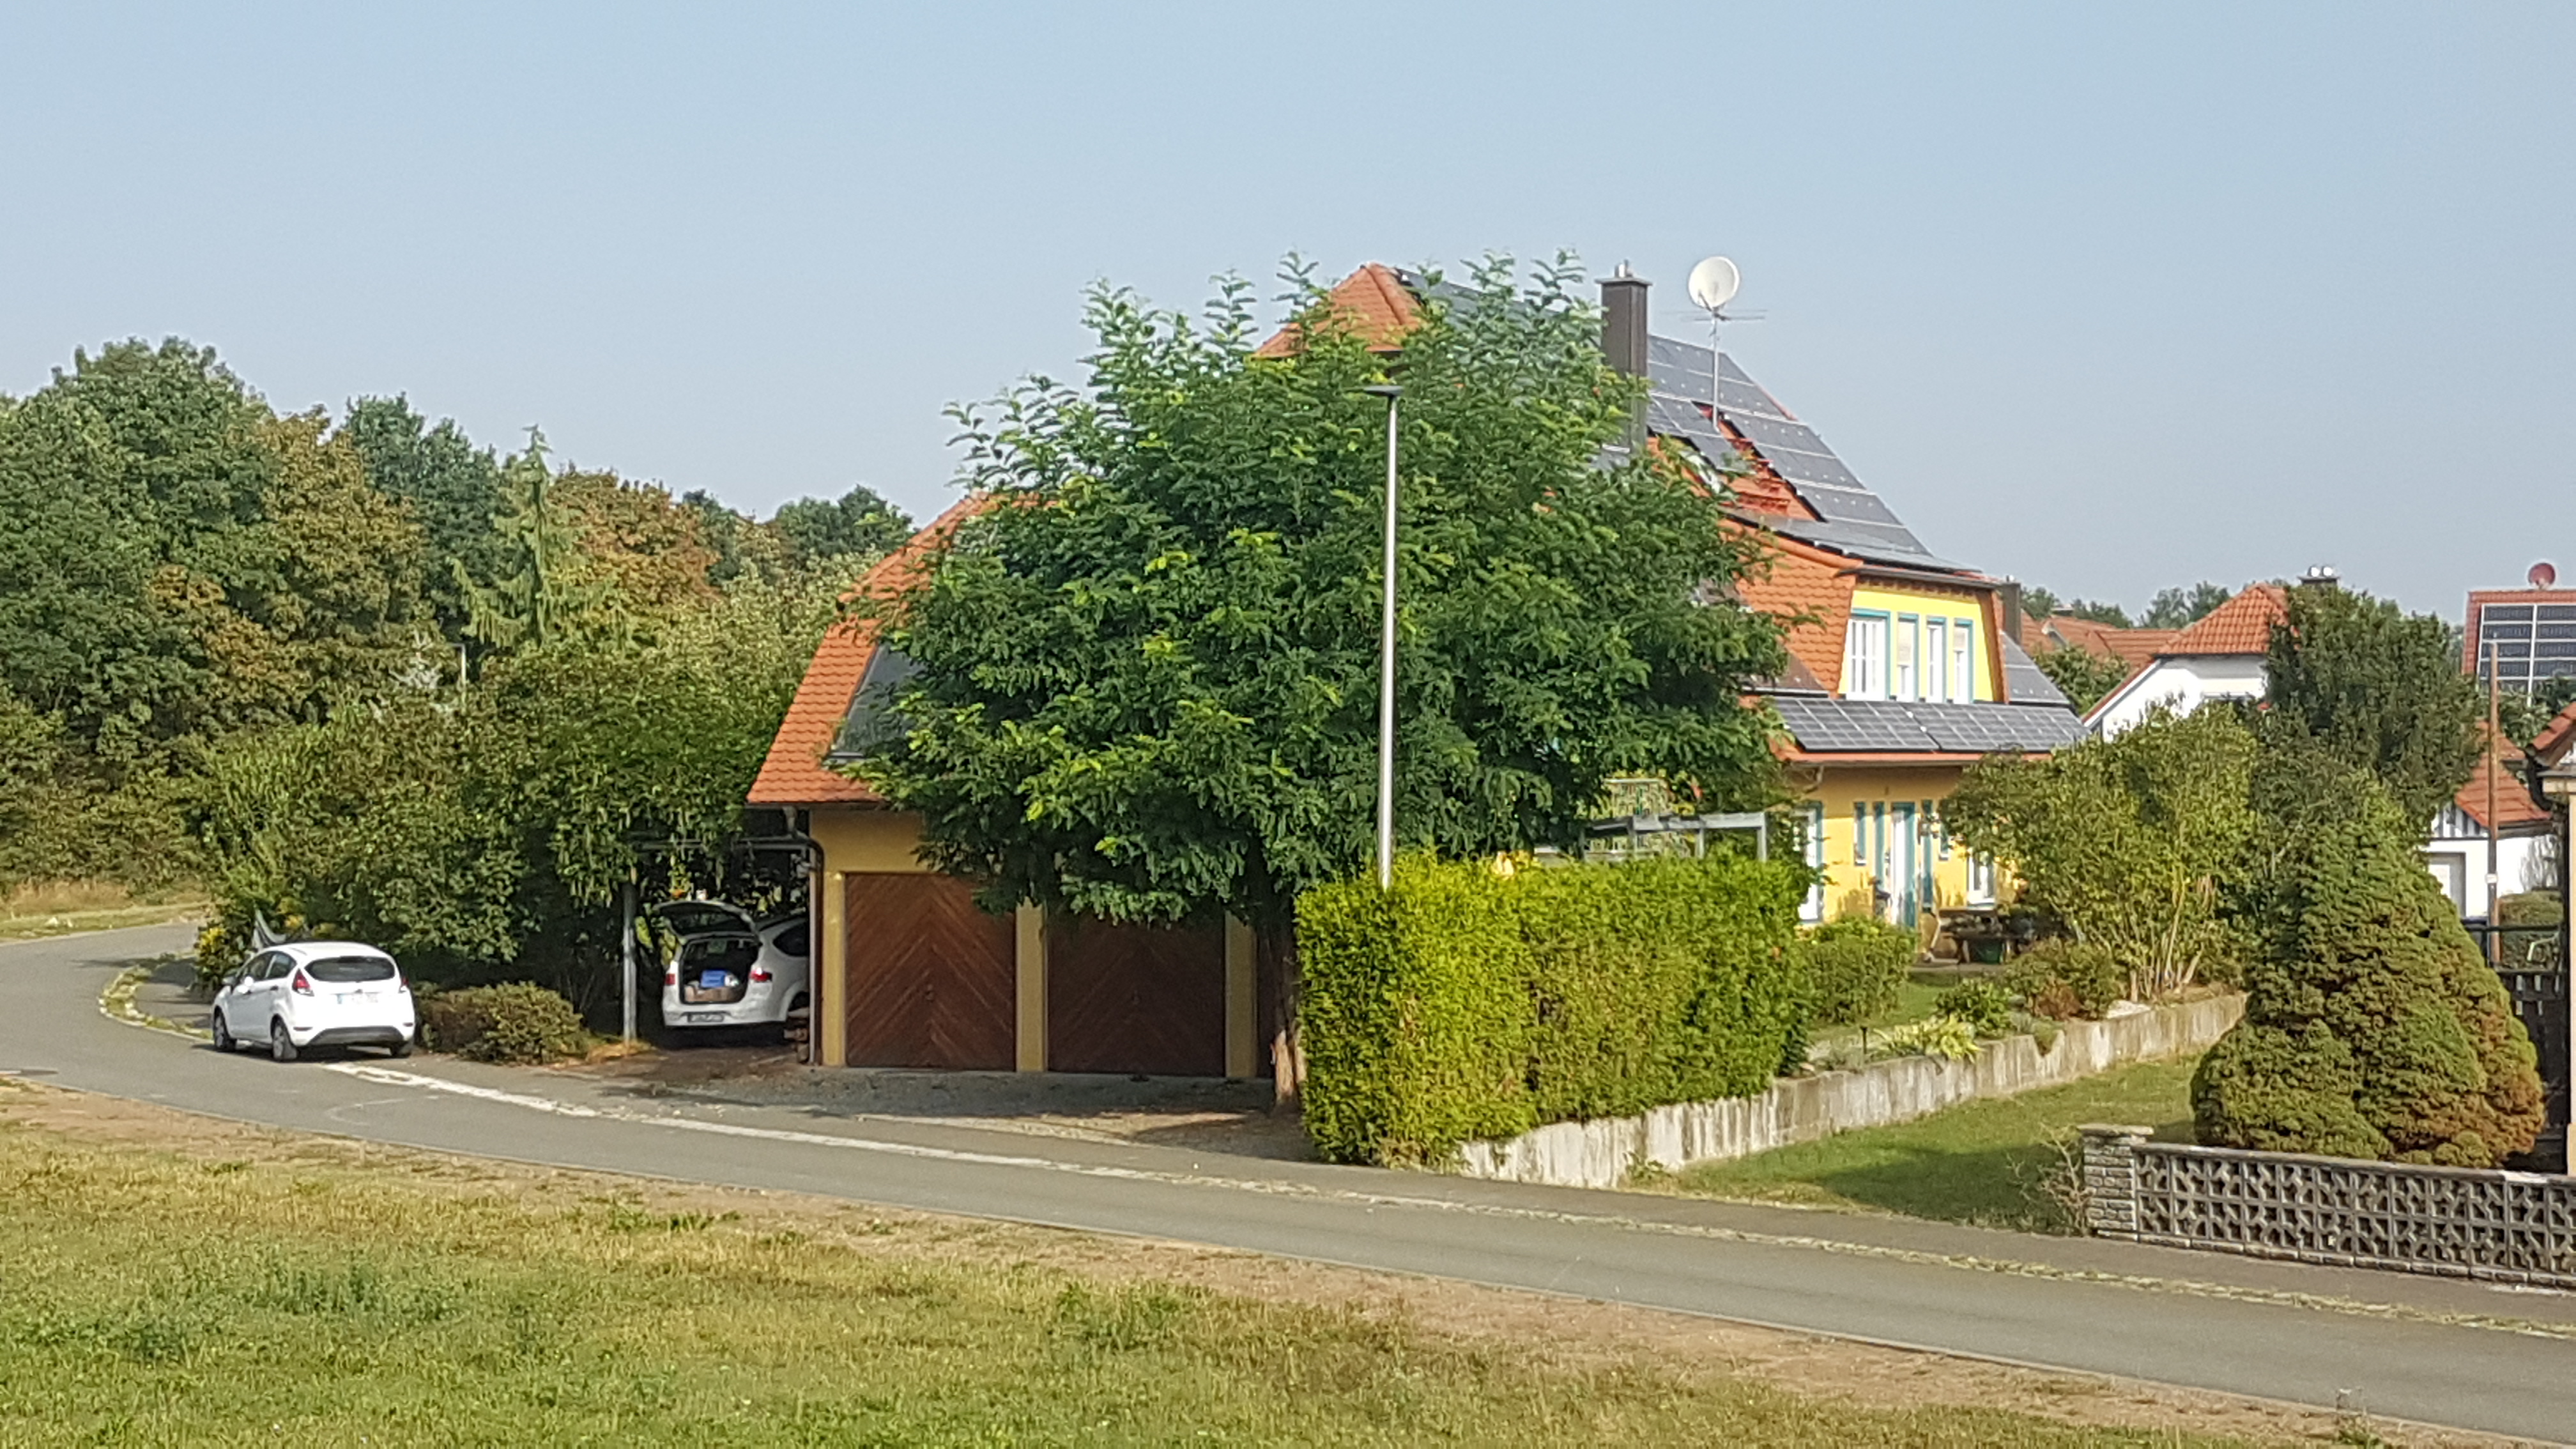 Anwesen Fliederweg 29 in Eggolsheim im Sommer Suedostansicht